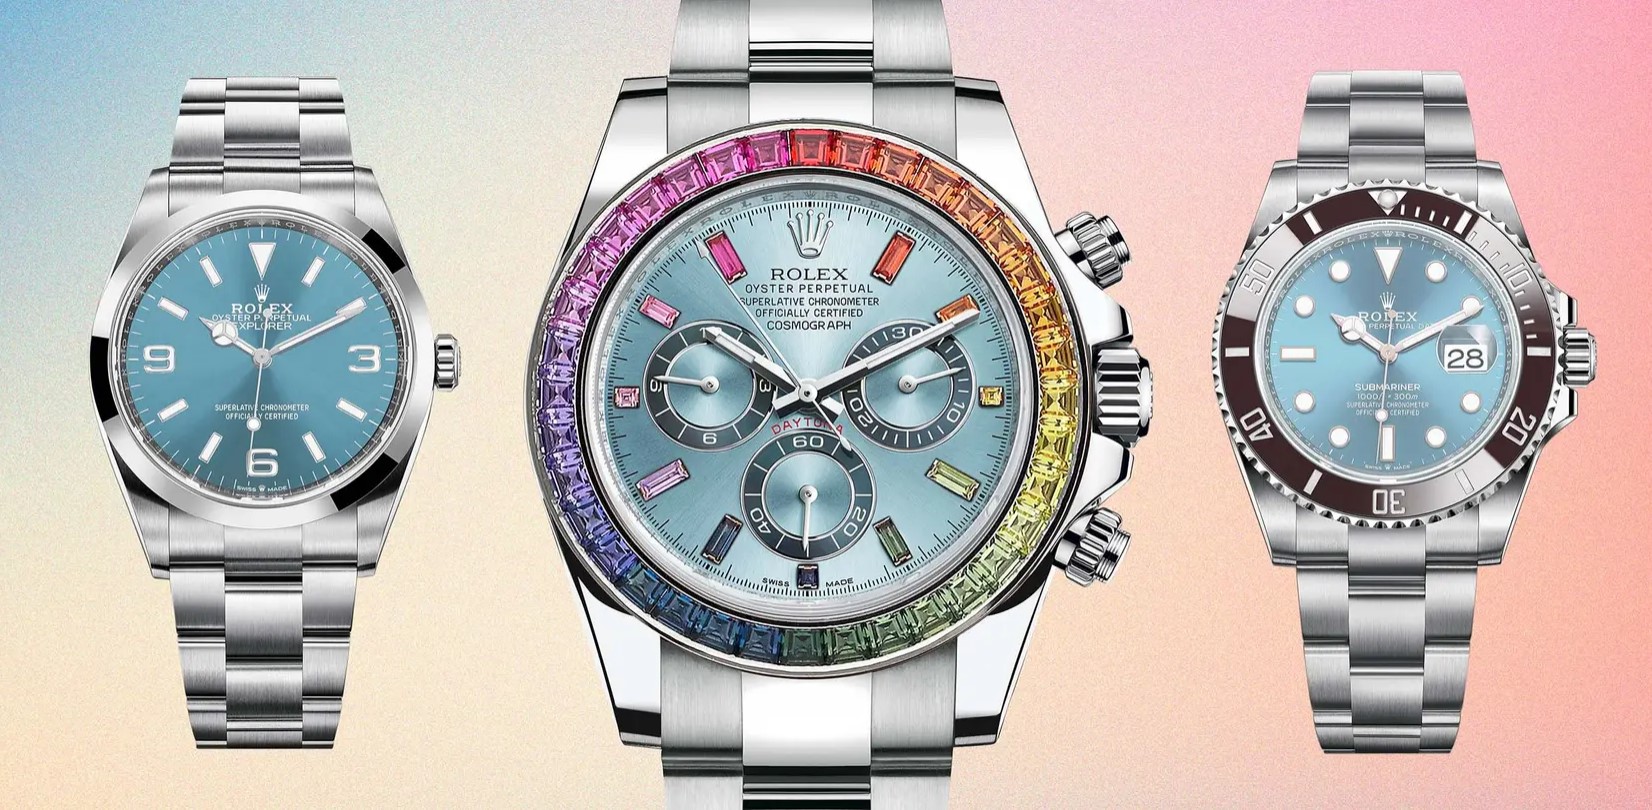 Rolex kỷ niệm 3 biểu tượng đồng hồ lớn nhất của hãng - Có gì mới đáng chờ đợi?